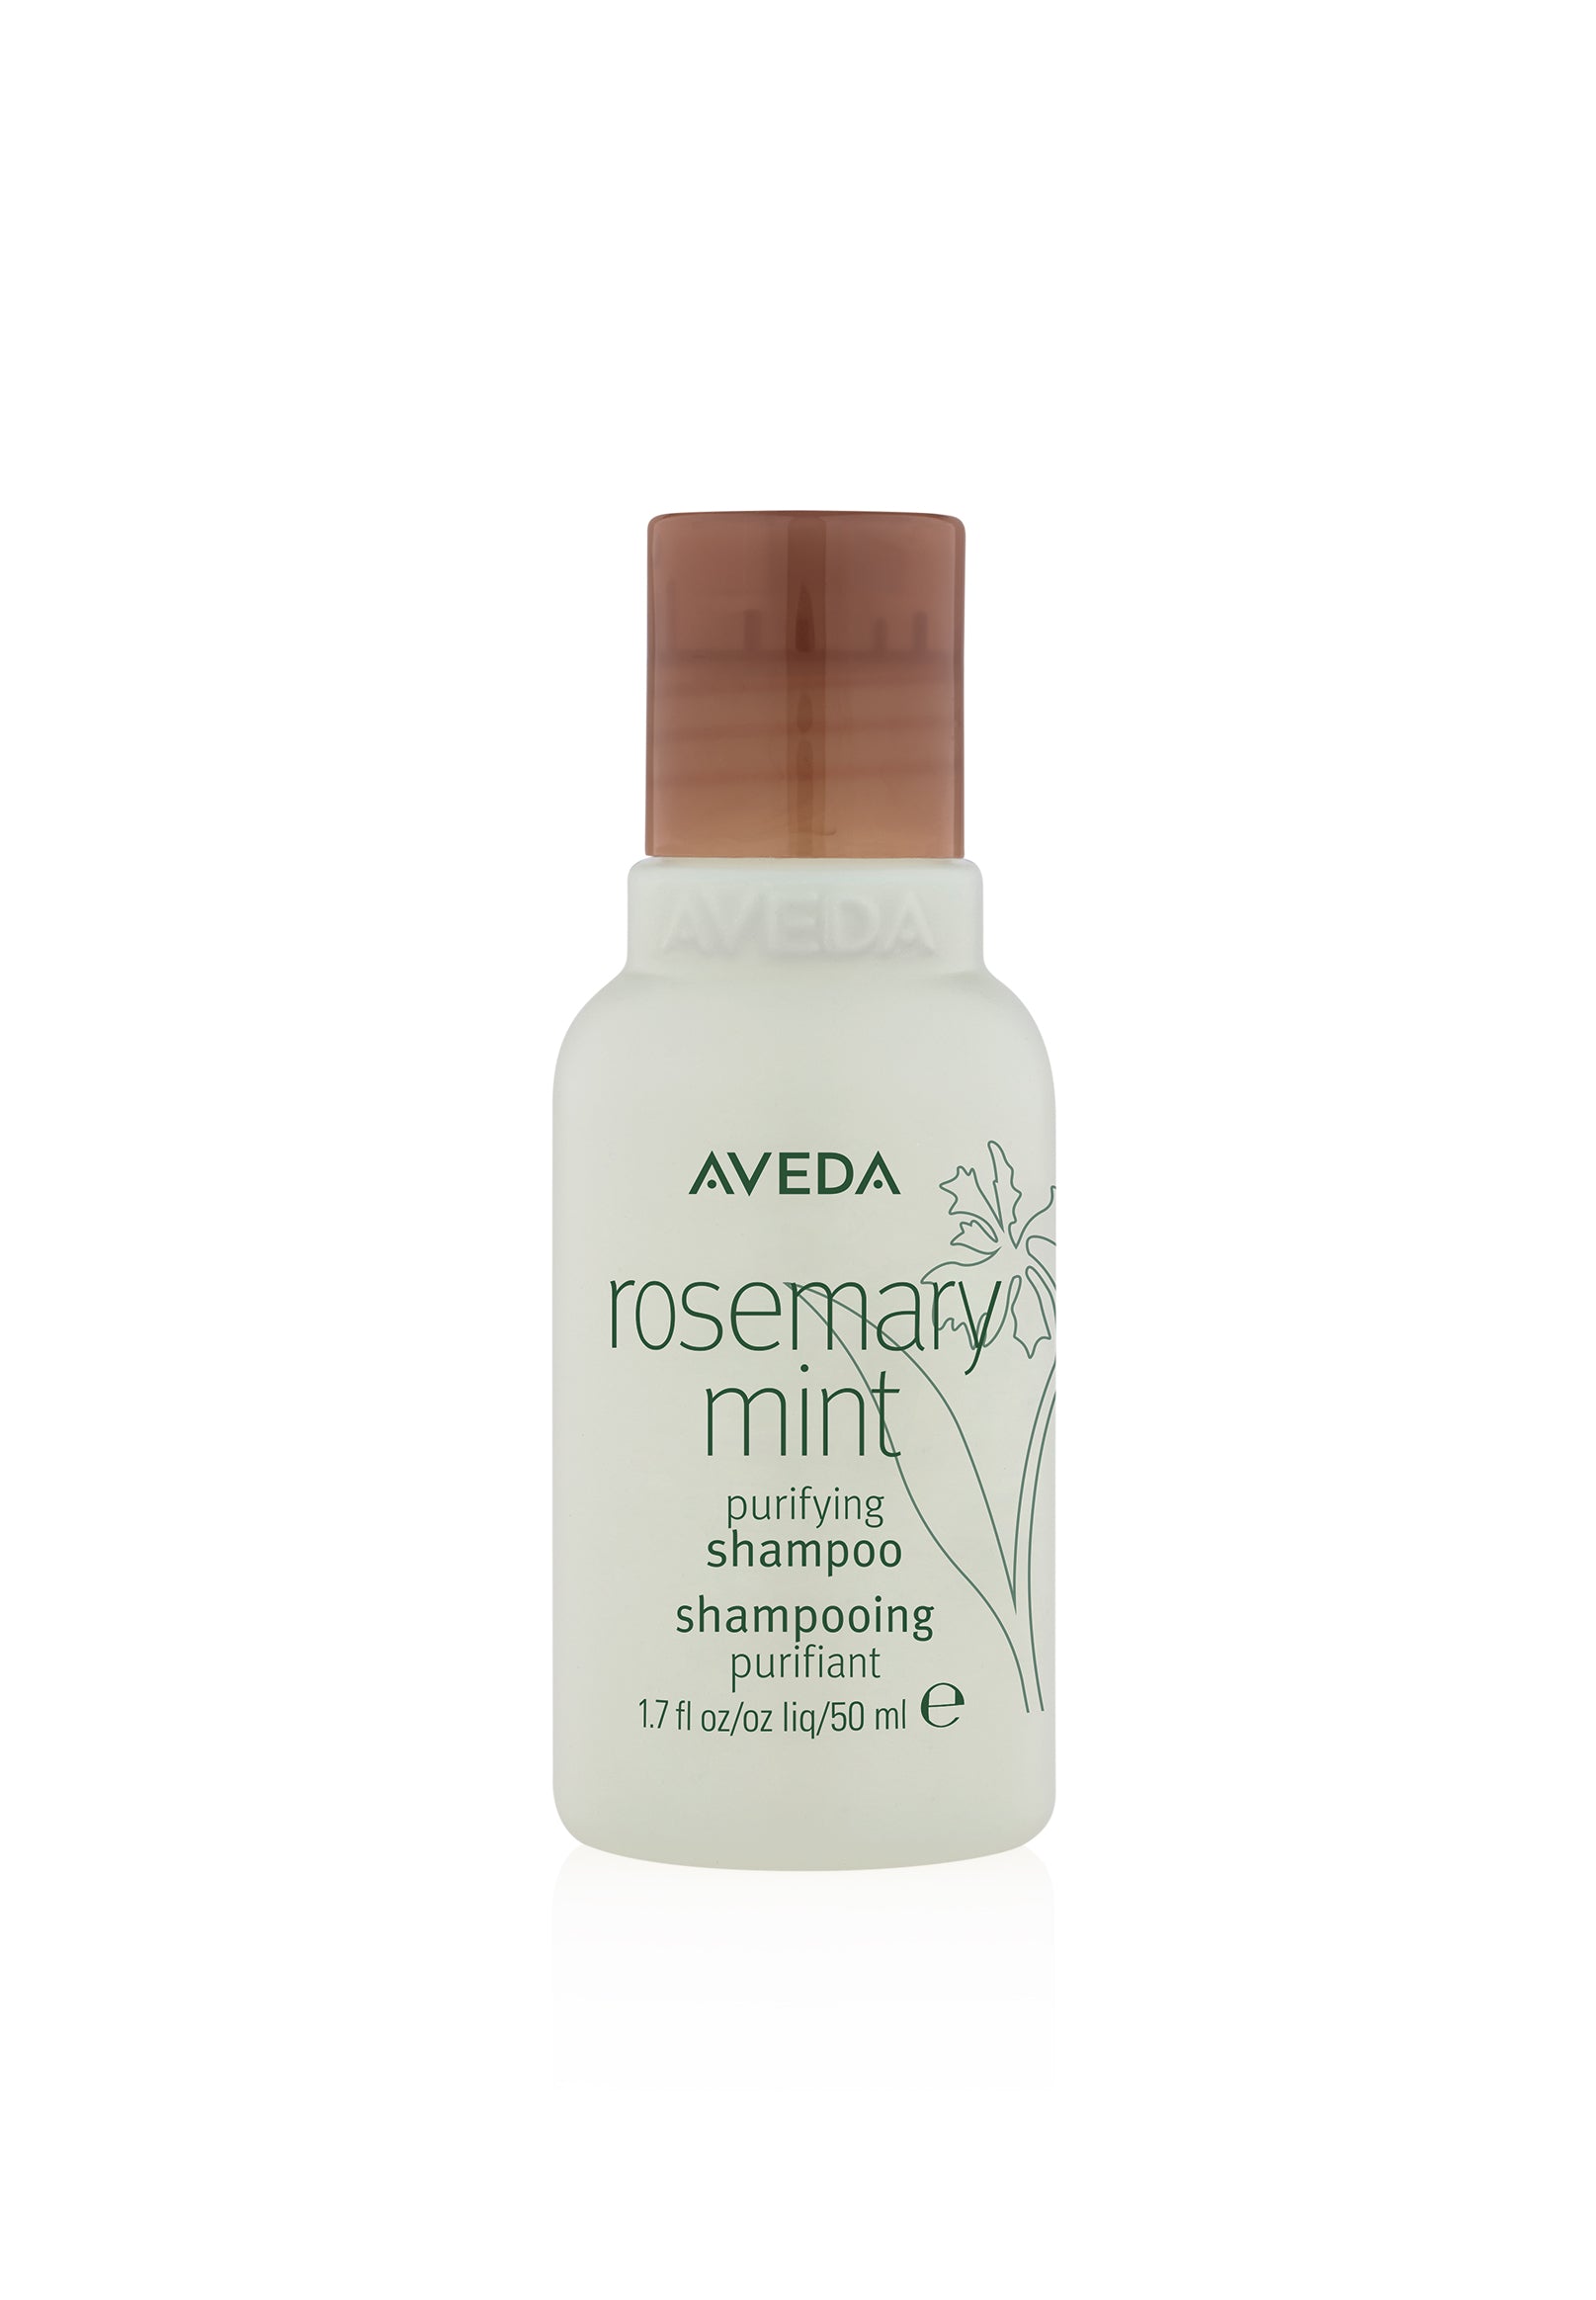 Aveda rosemary mint shampoo - travel size